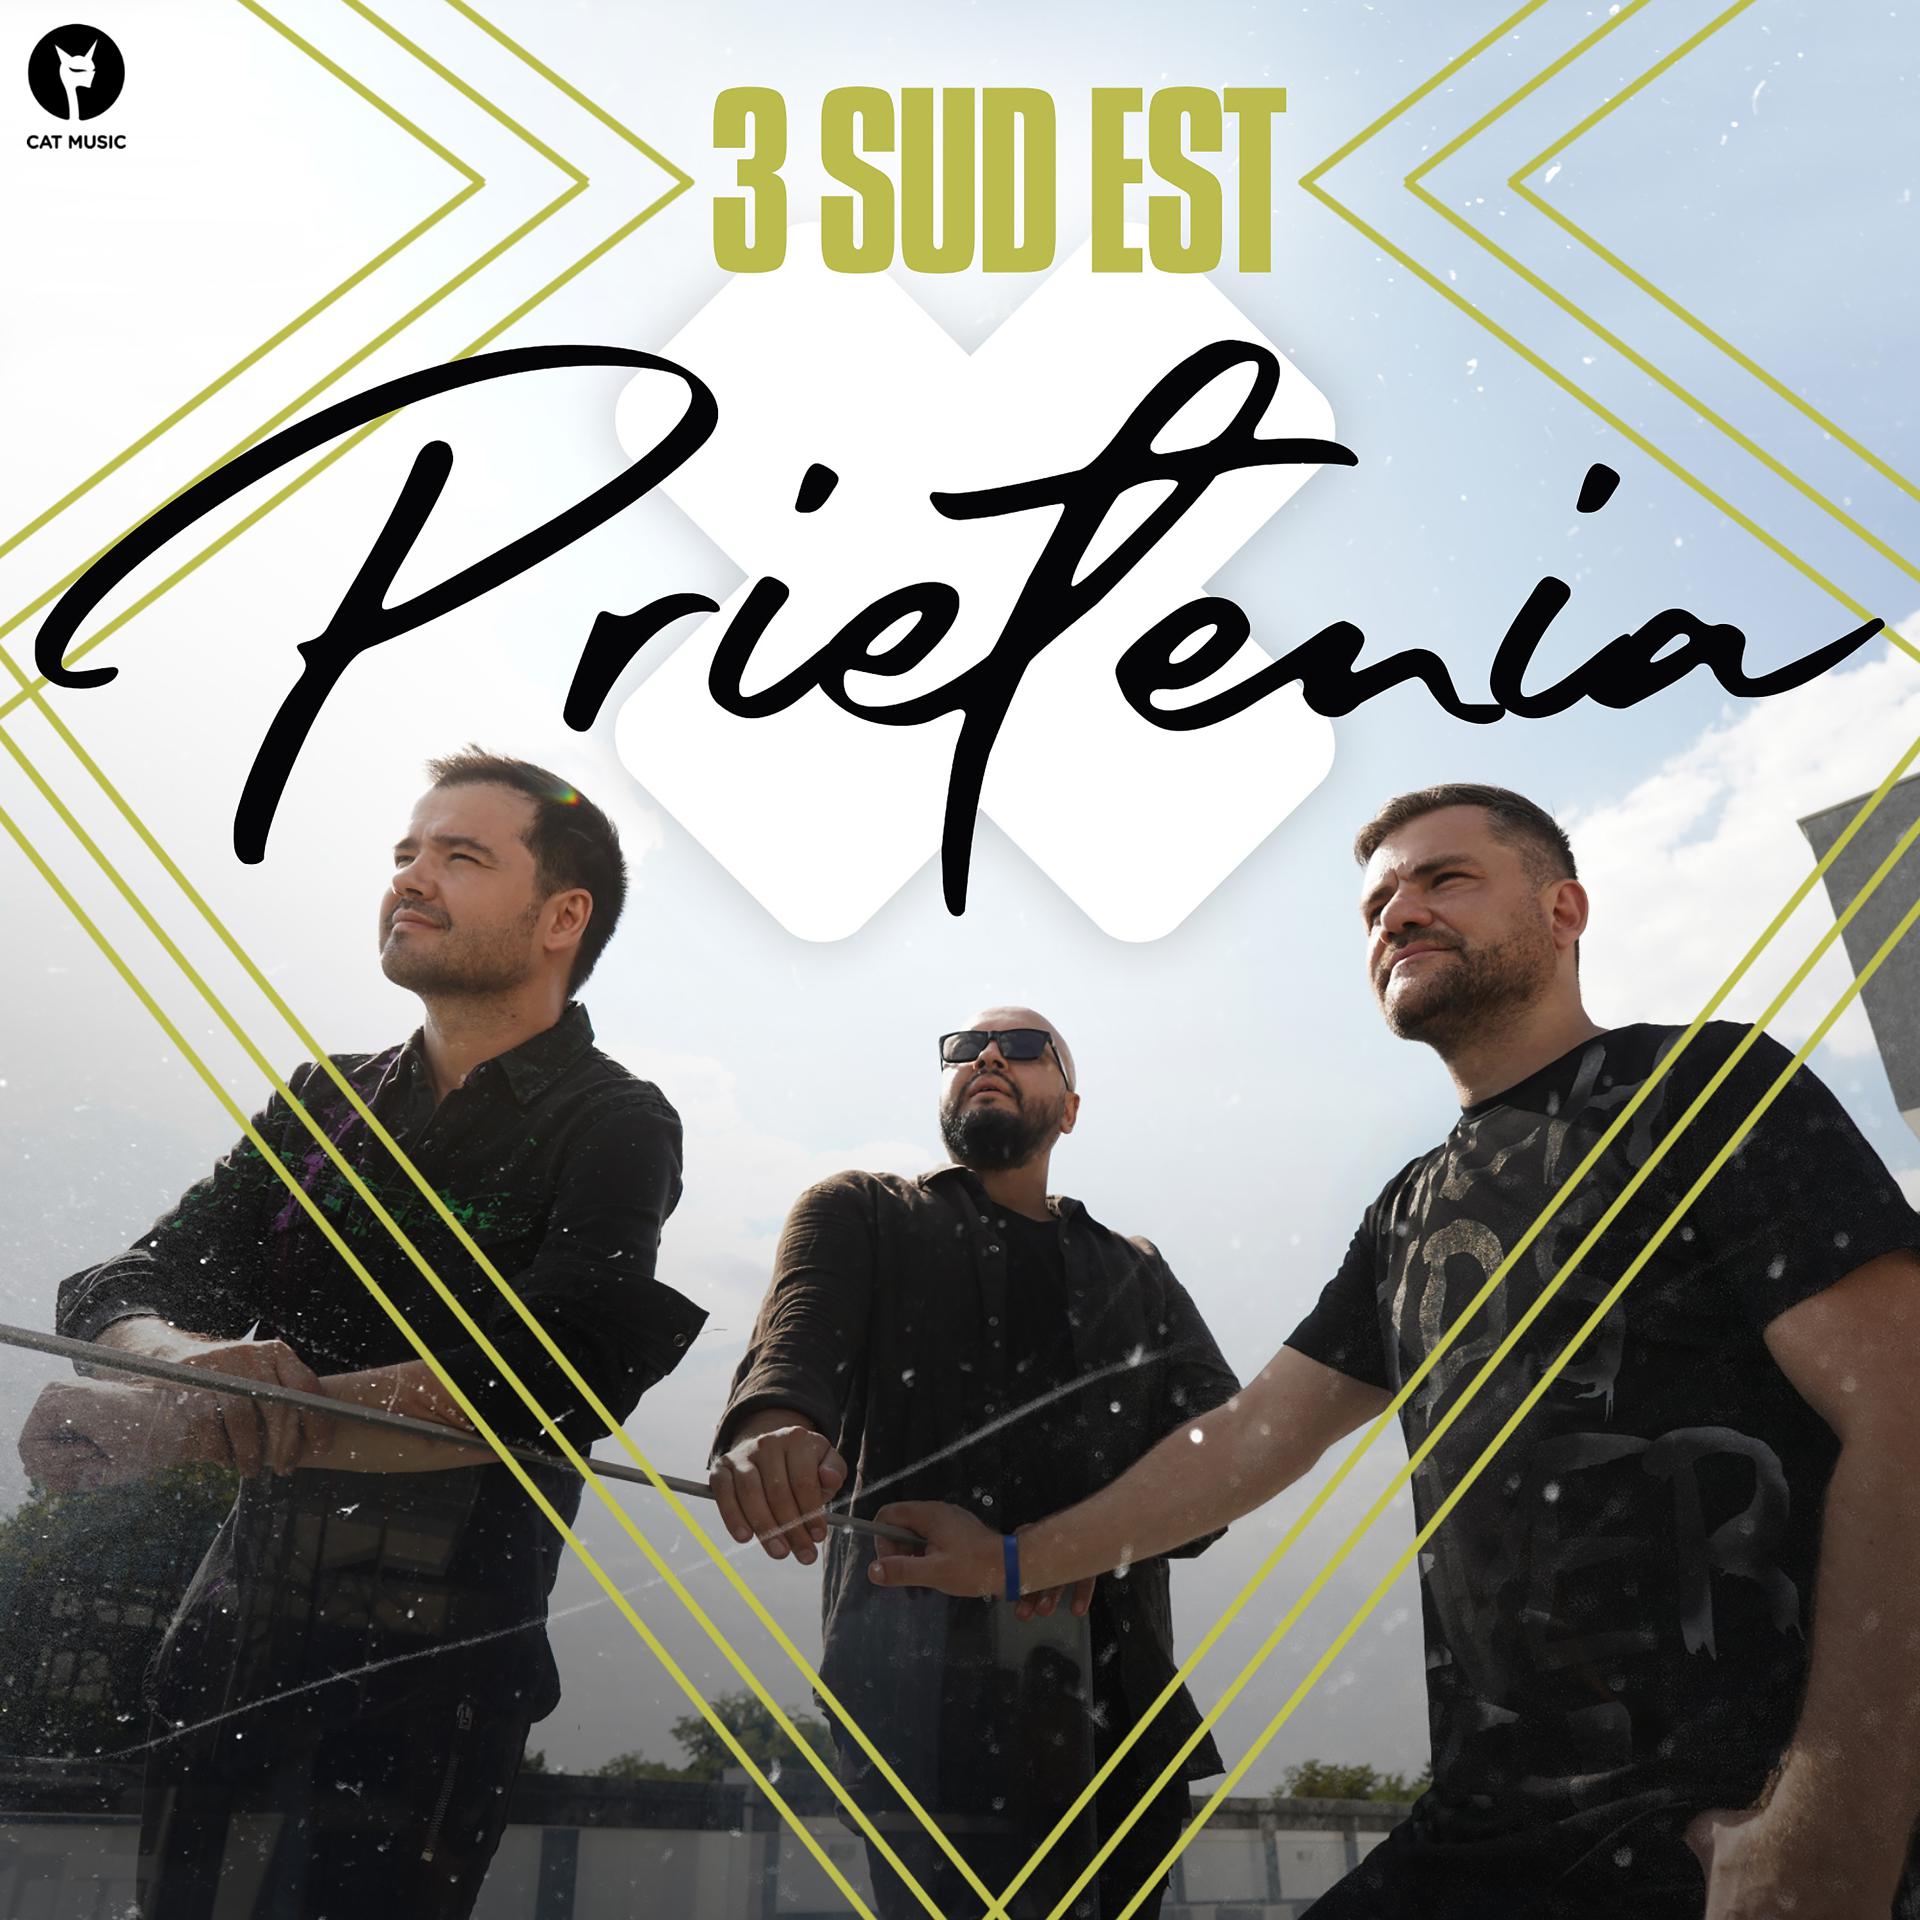 Постер альбома Prietenia